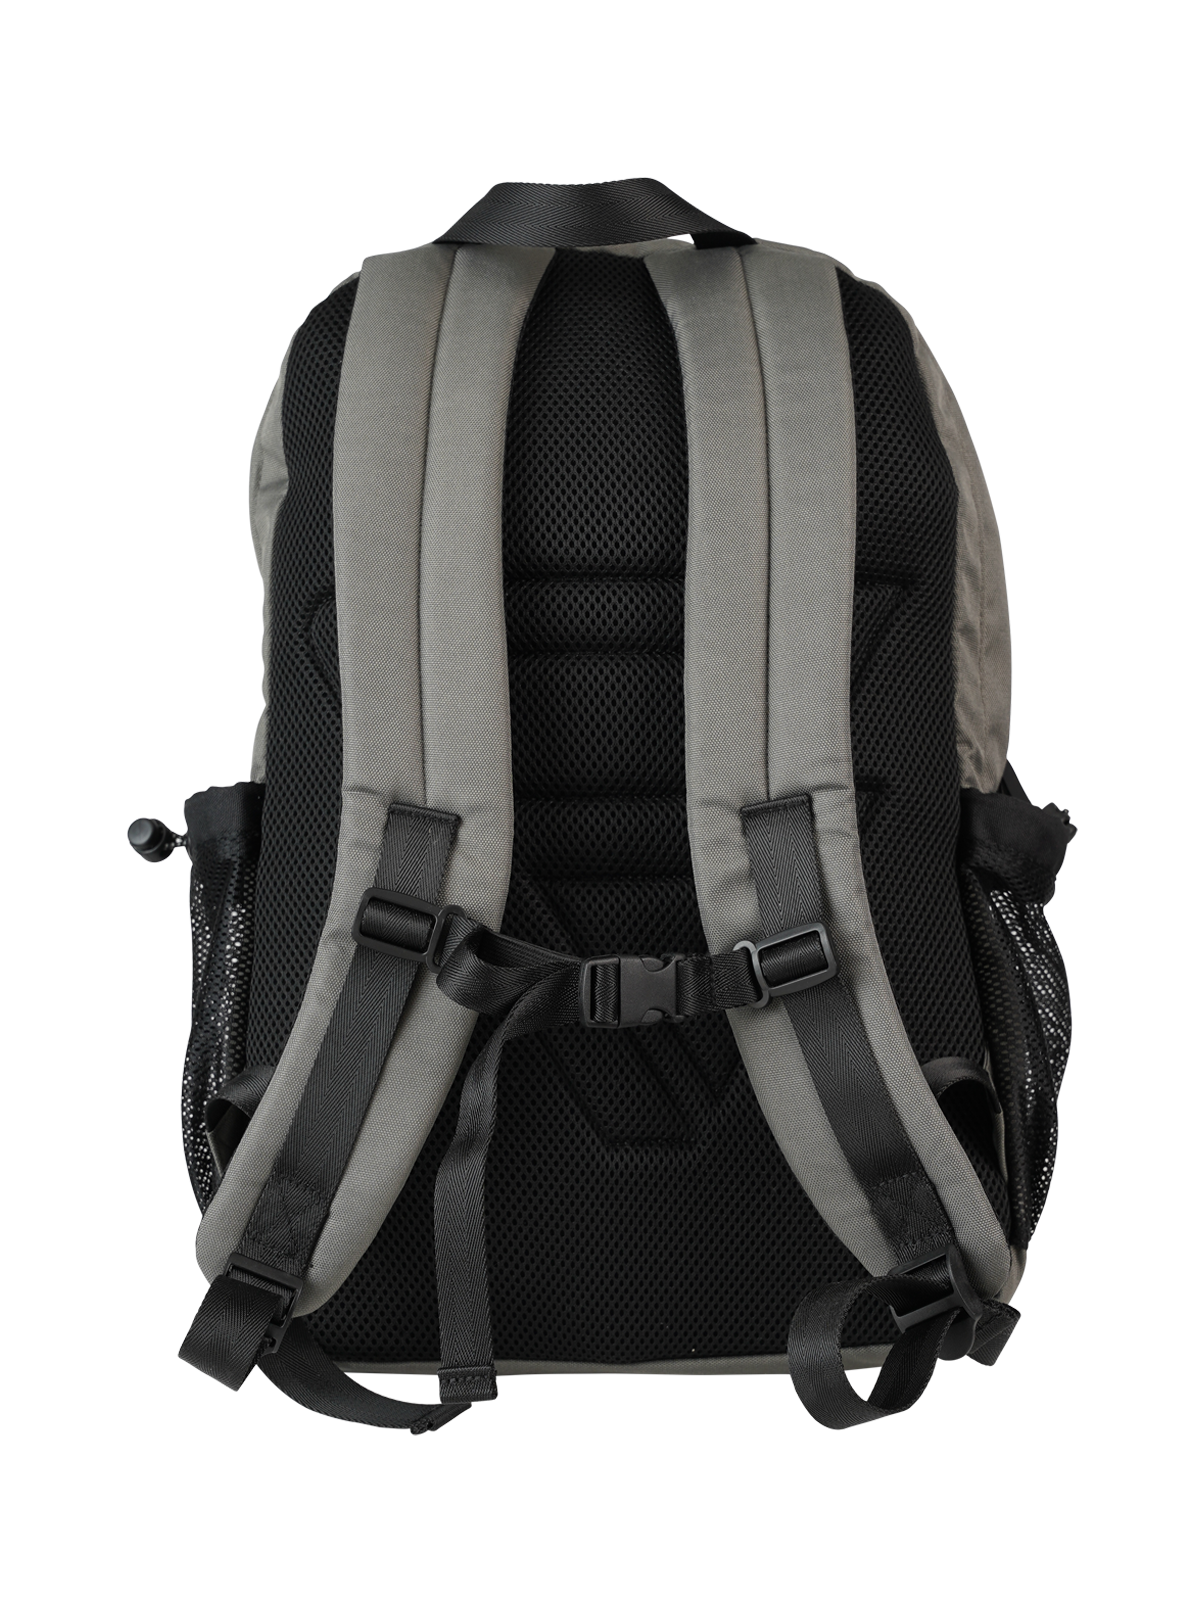 Nanga Backpack | Grau